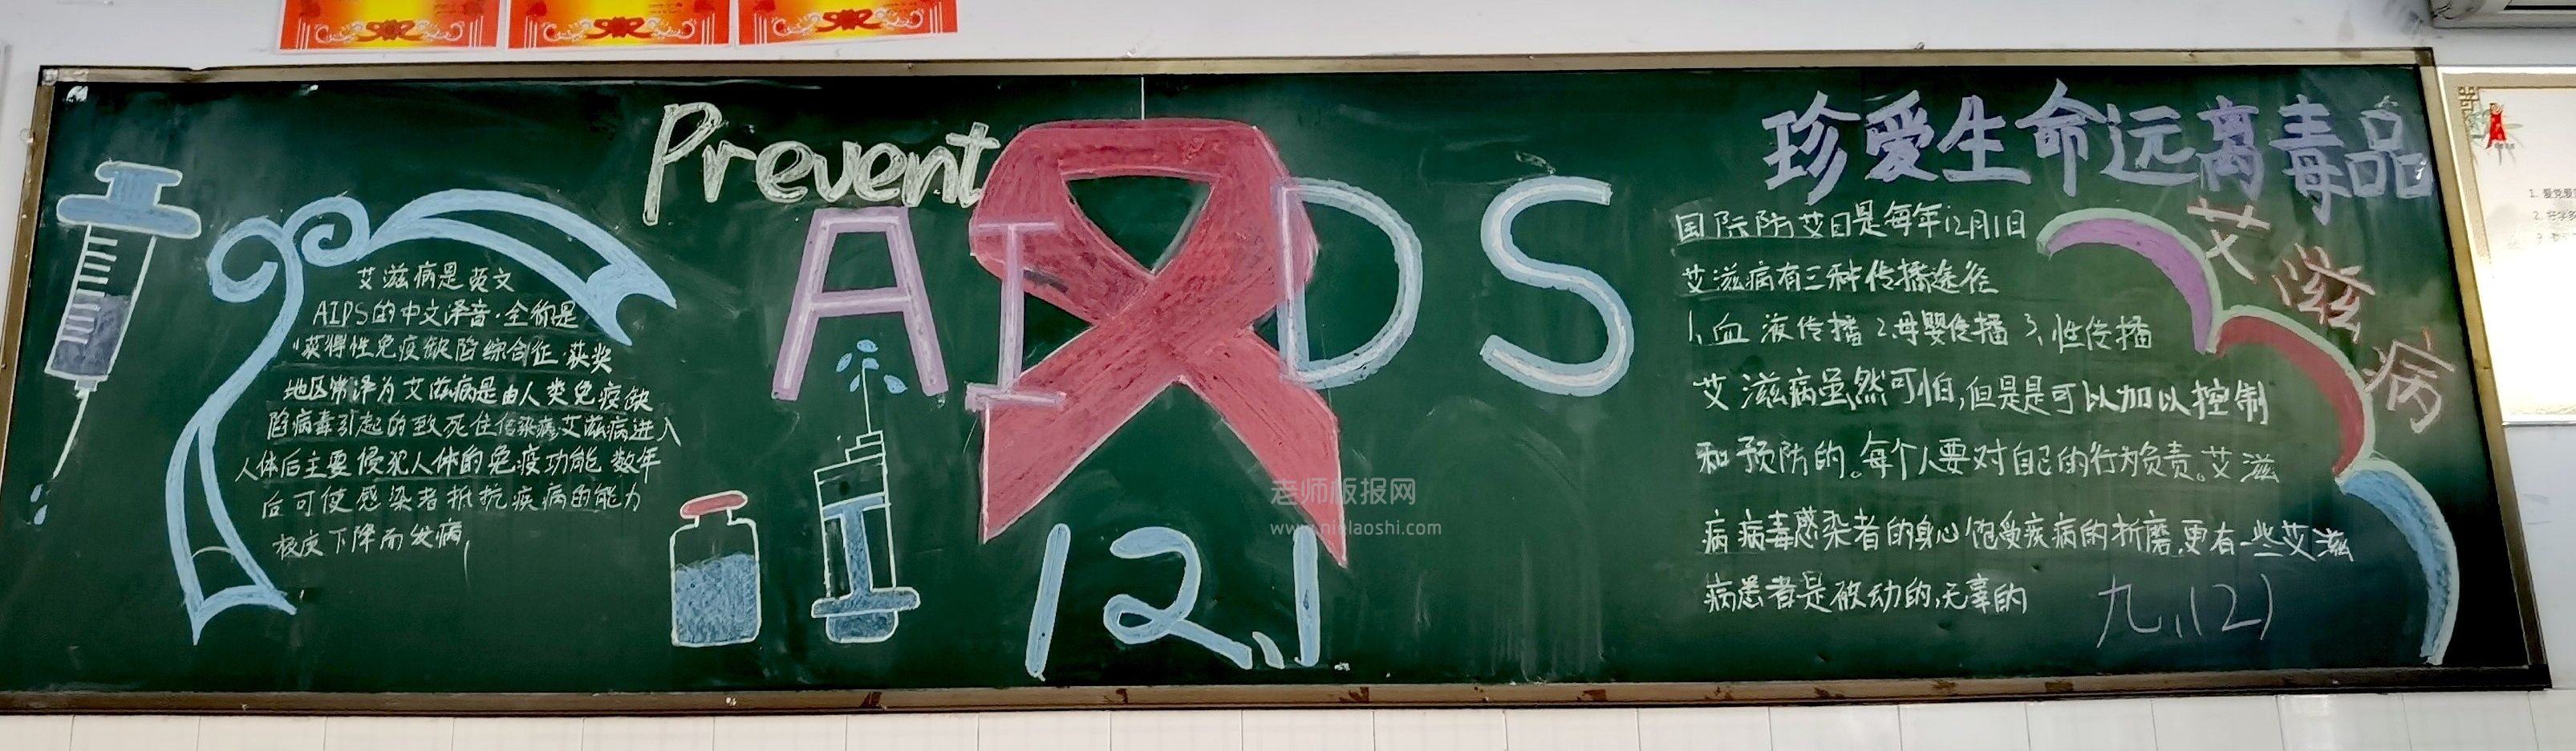 艾滋病黑板报图片 珍爱生命远离毒品